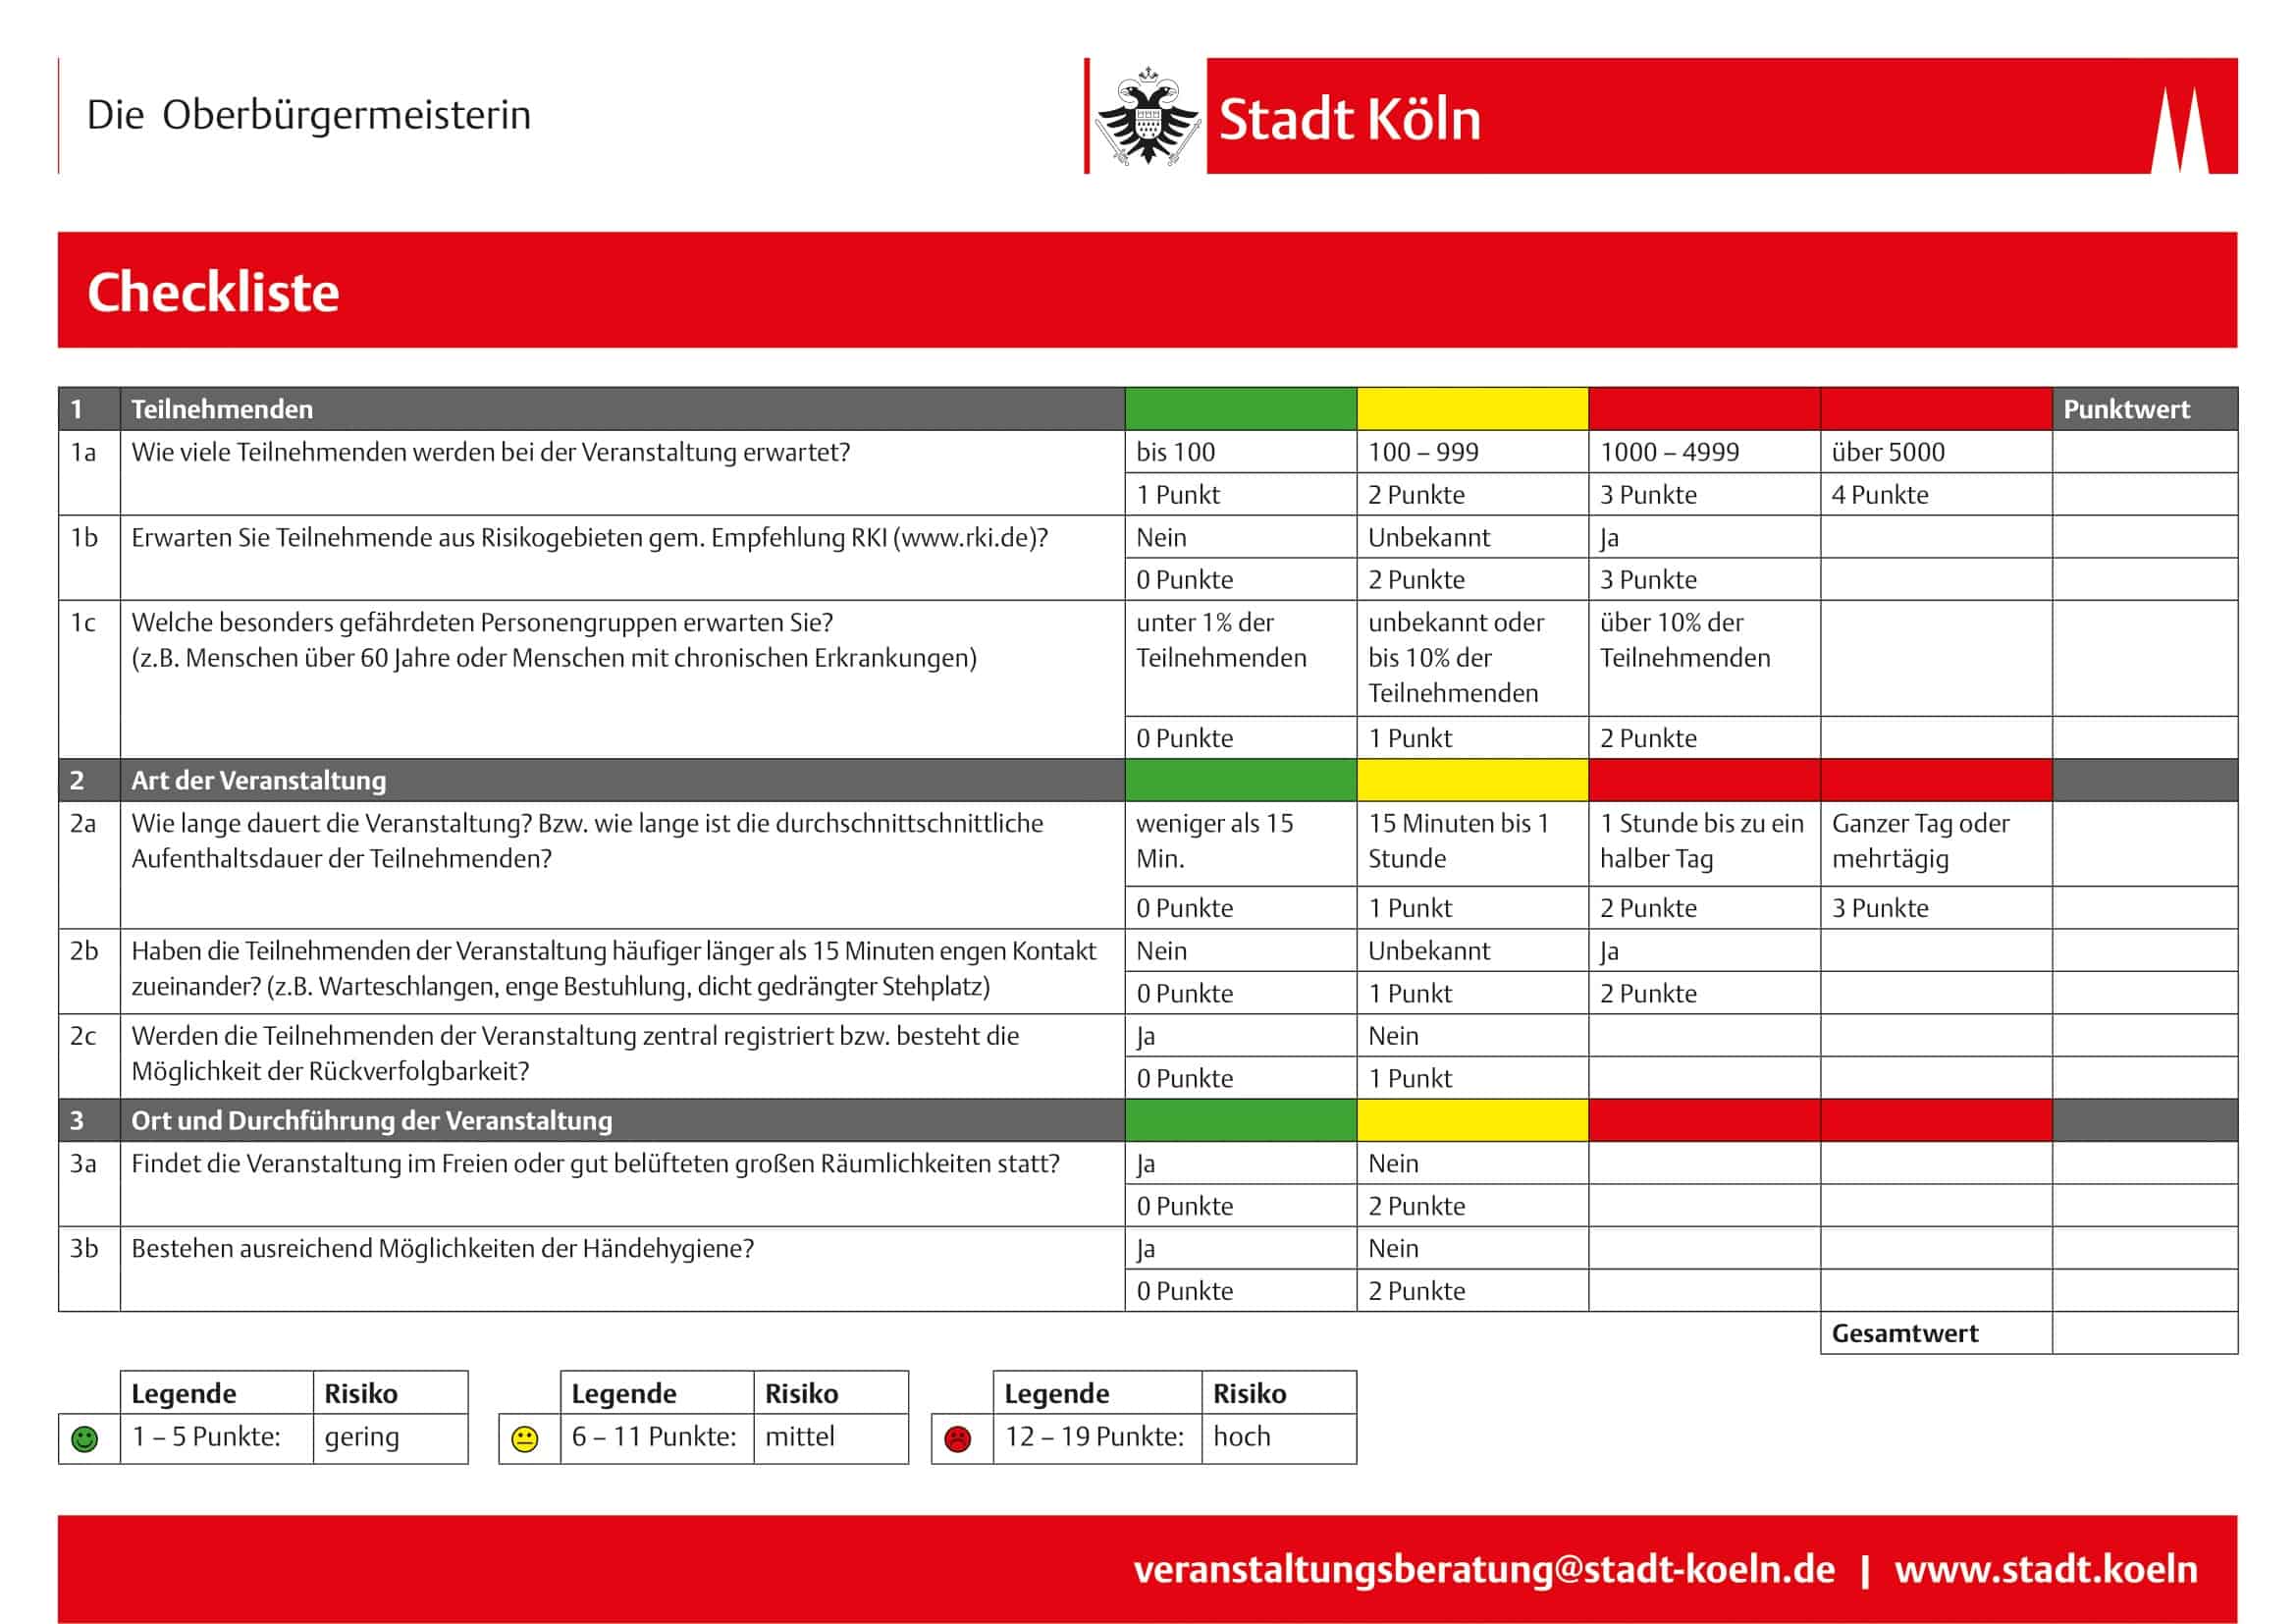 Checkliste - Veranstaltungen - Coronavirus - Veranstaltungsberatung - Stadt Köln - März 2020